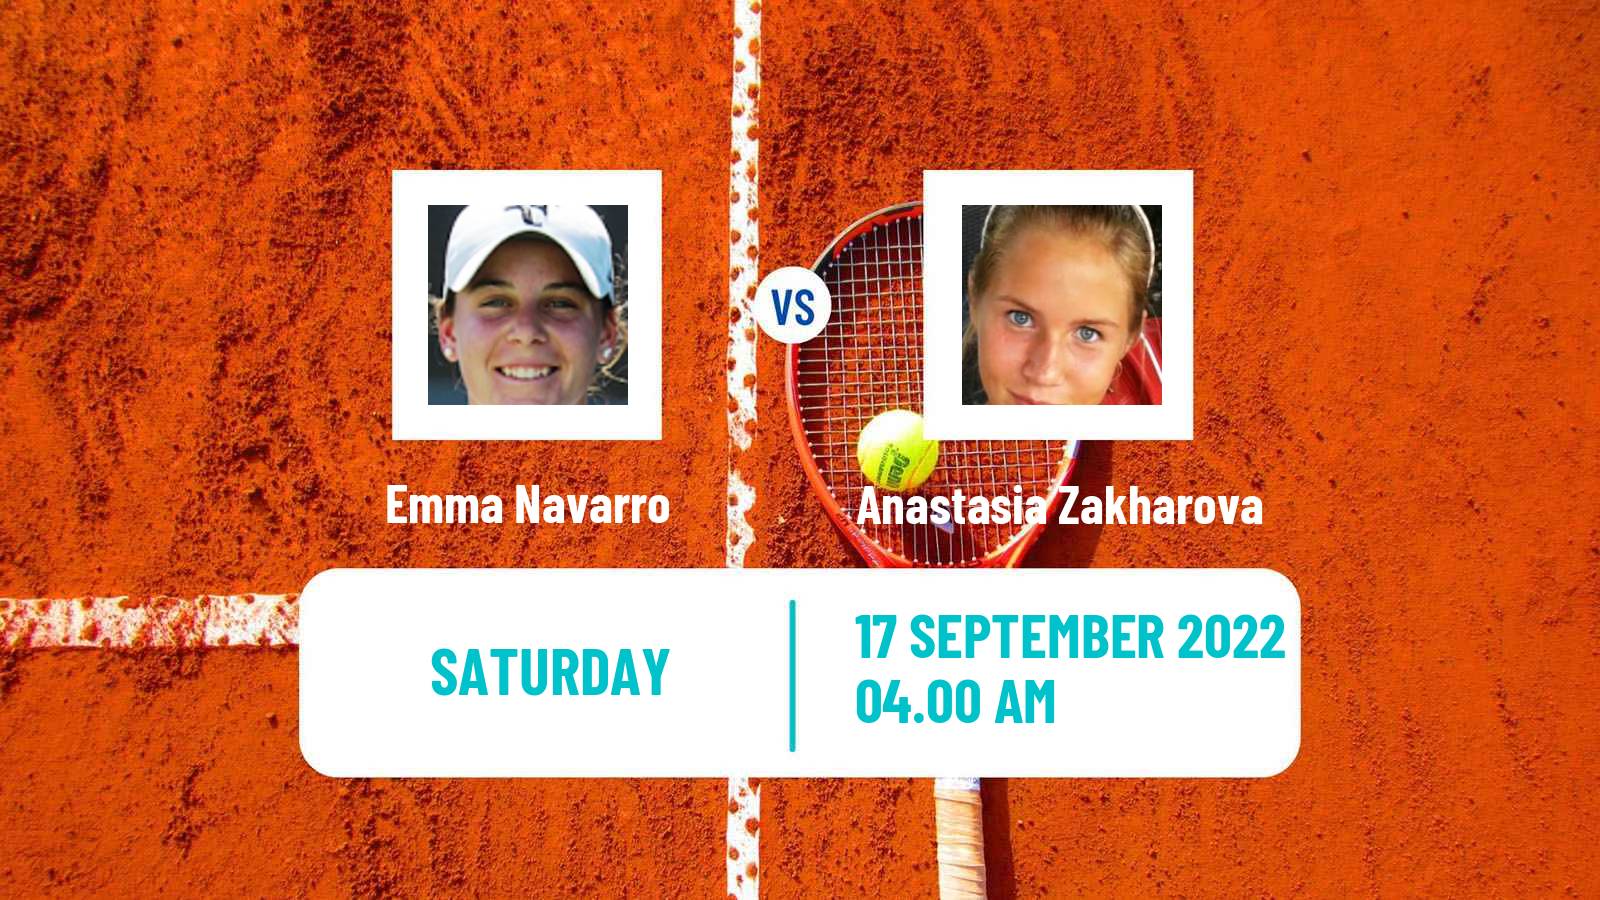 Tennis ATP Challenger Emma Navarro - Anastasia Zakharova